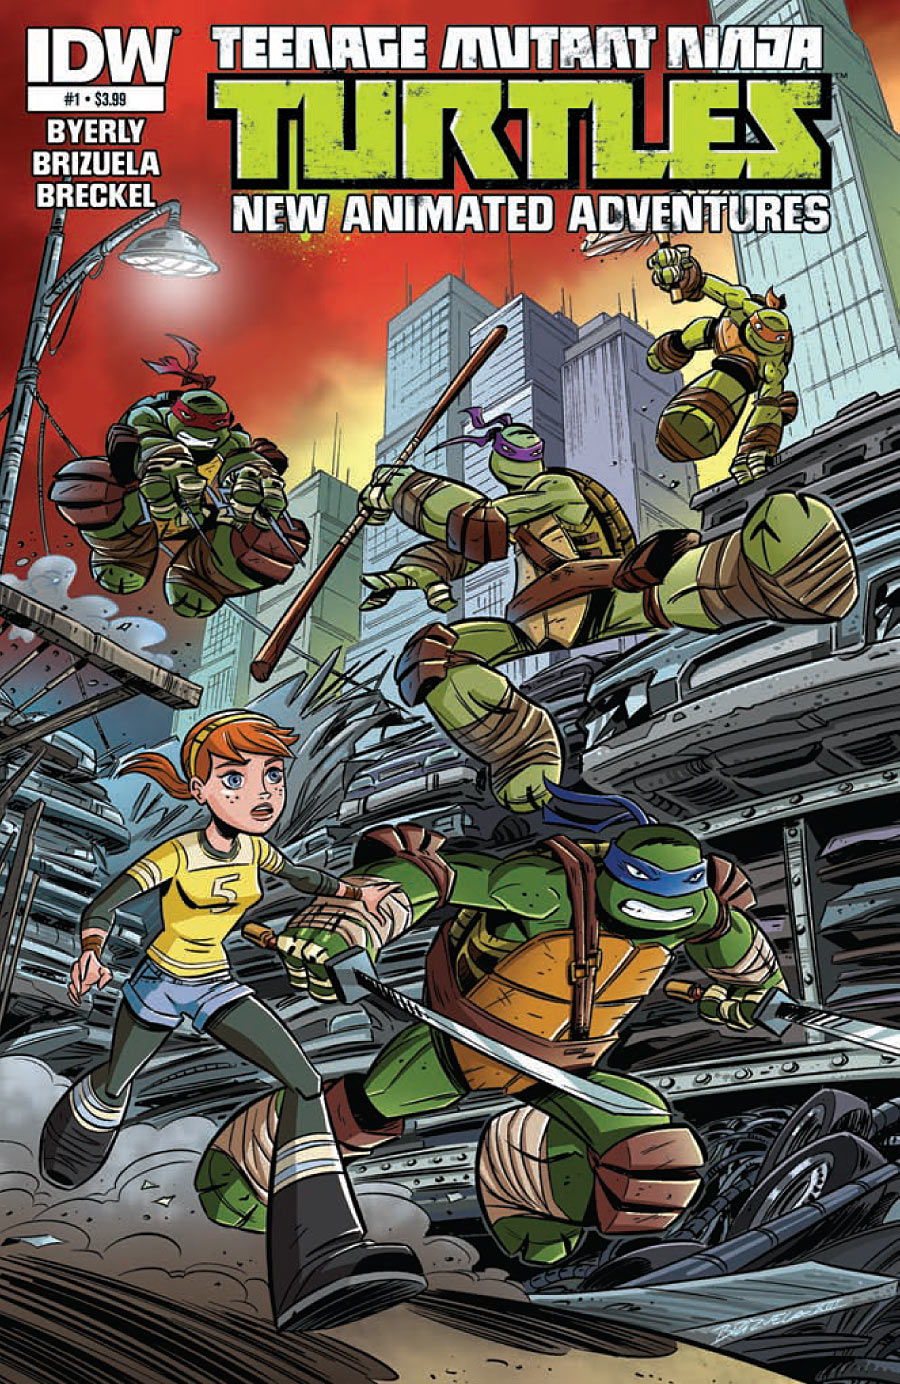 Batman & Teenage Mutant Ninja Turtles Adventures Comic Book Issue